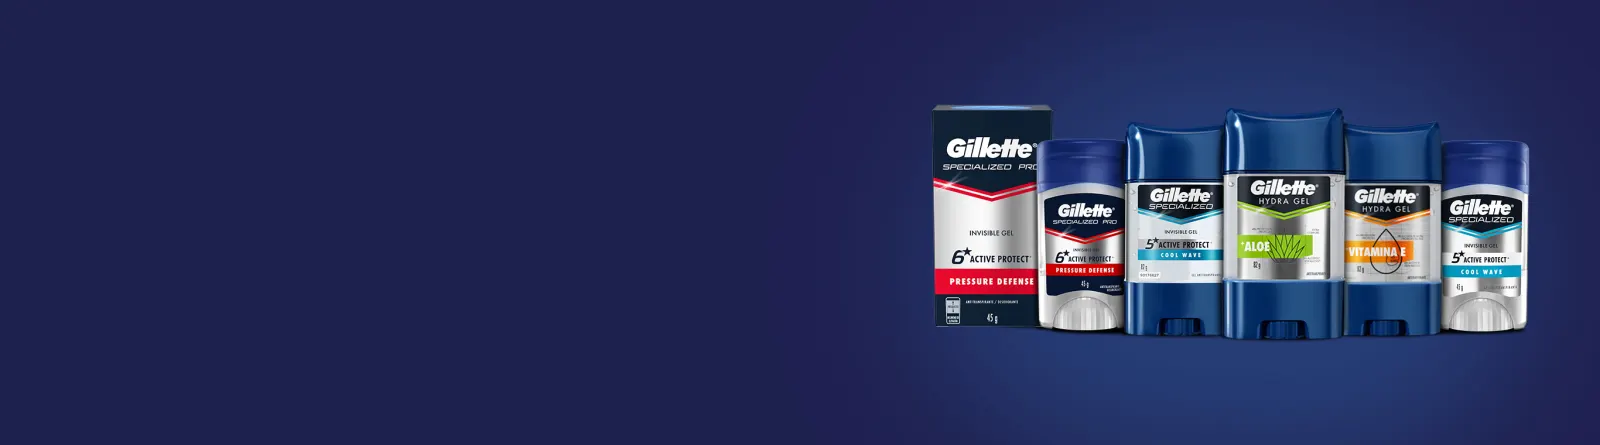 Complete seu kit de produtos de higiene pessoal com Desodorantes e Antitranspirantes Gillette.